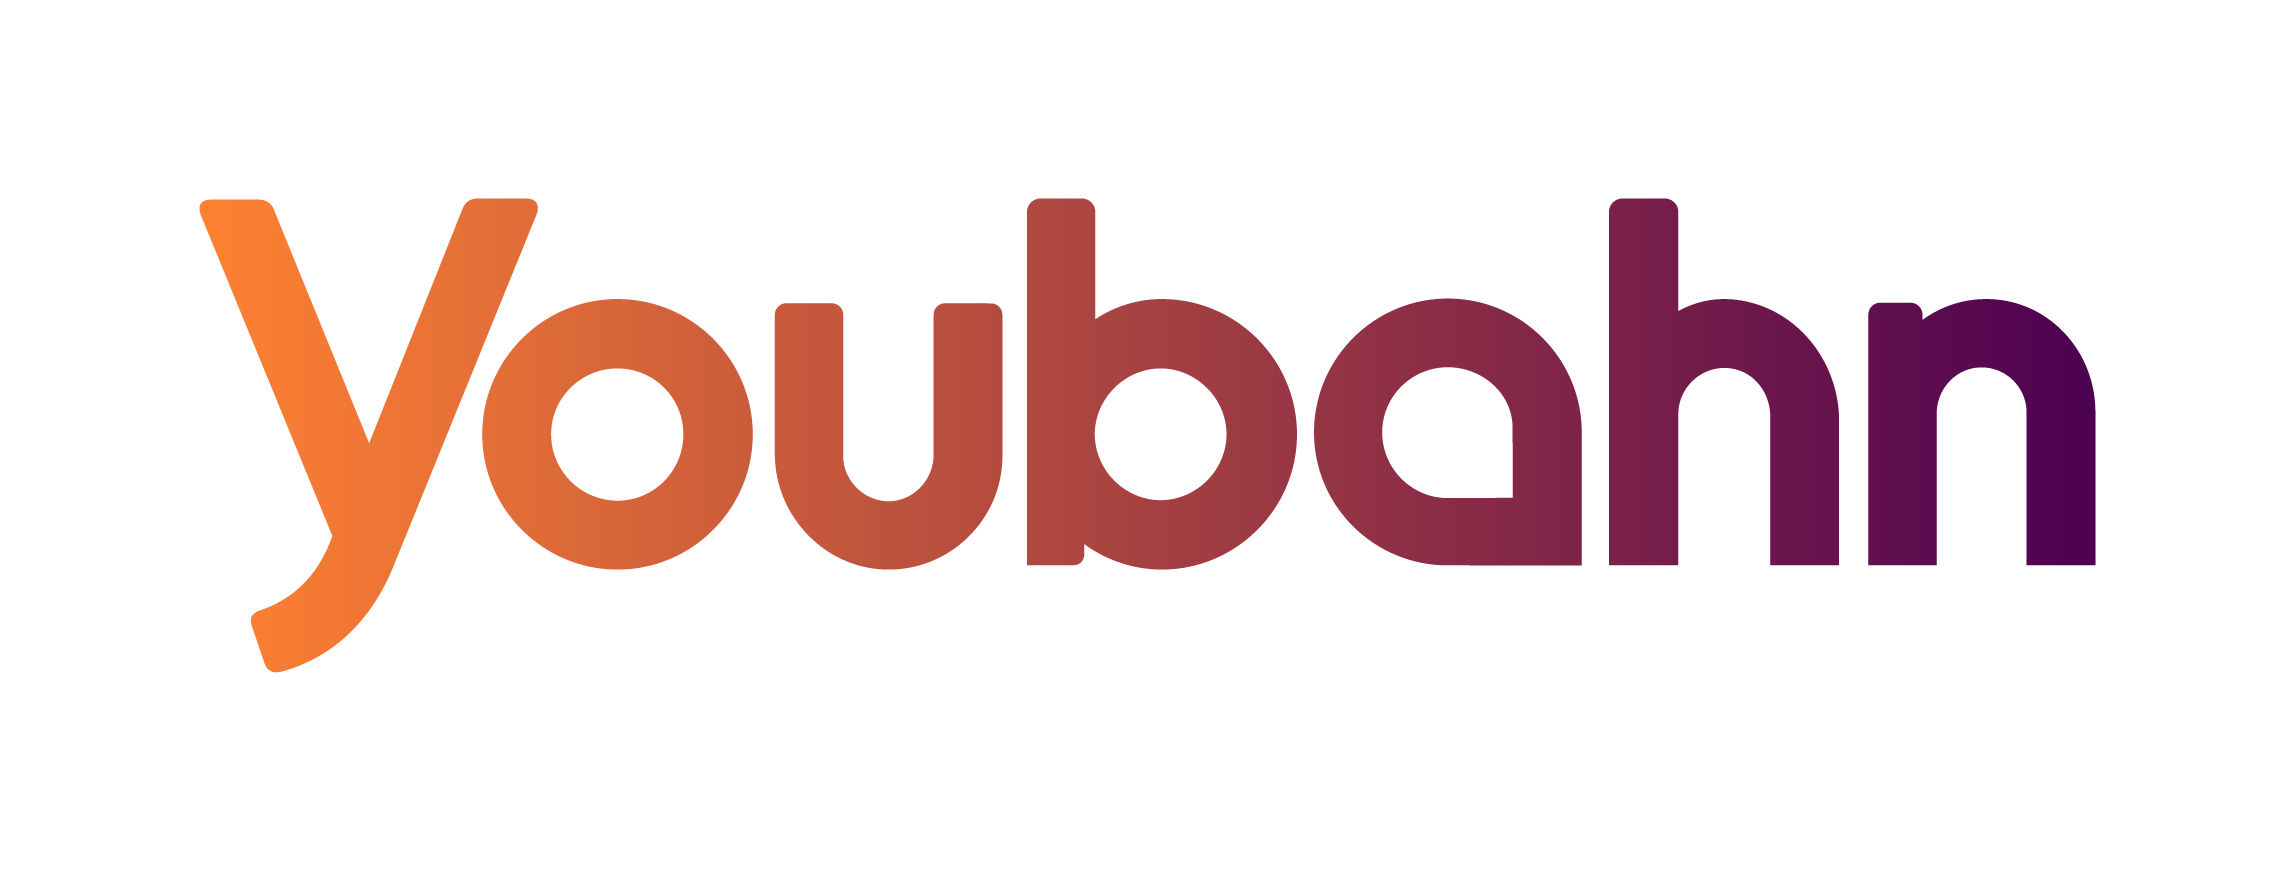 Youbahn-logo-RGB